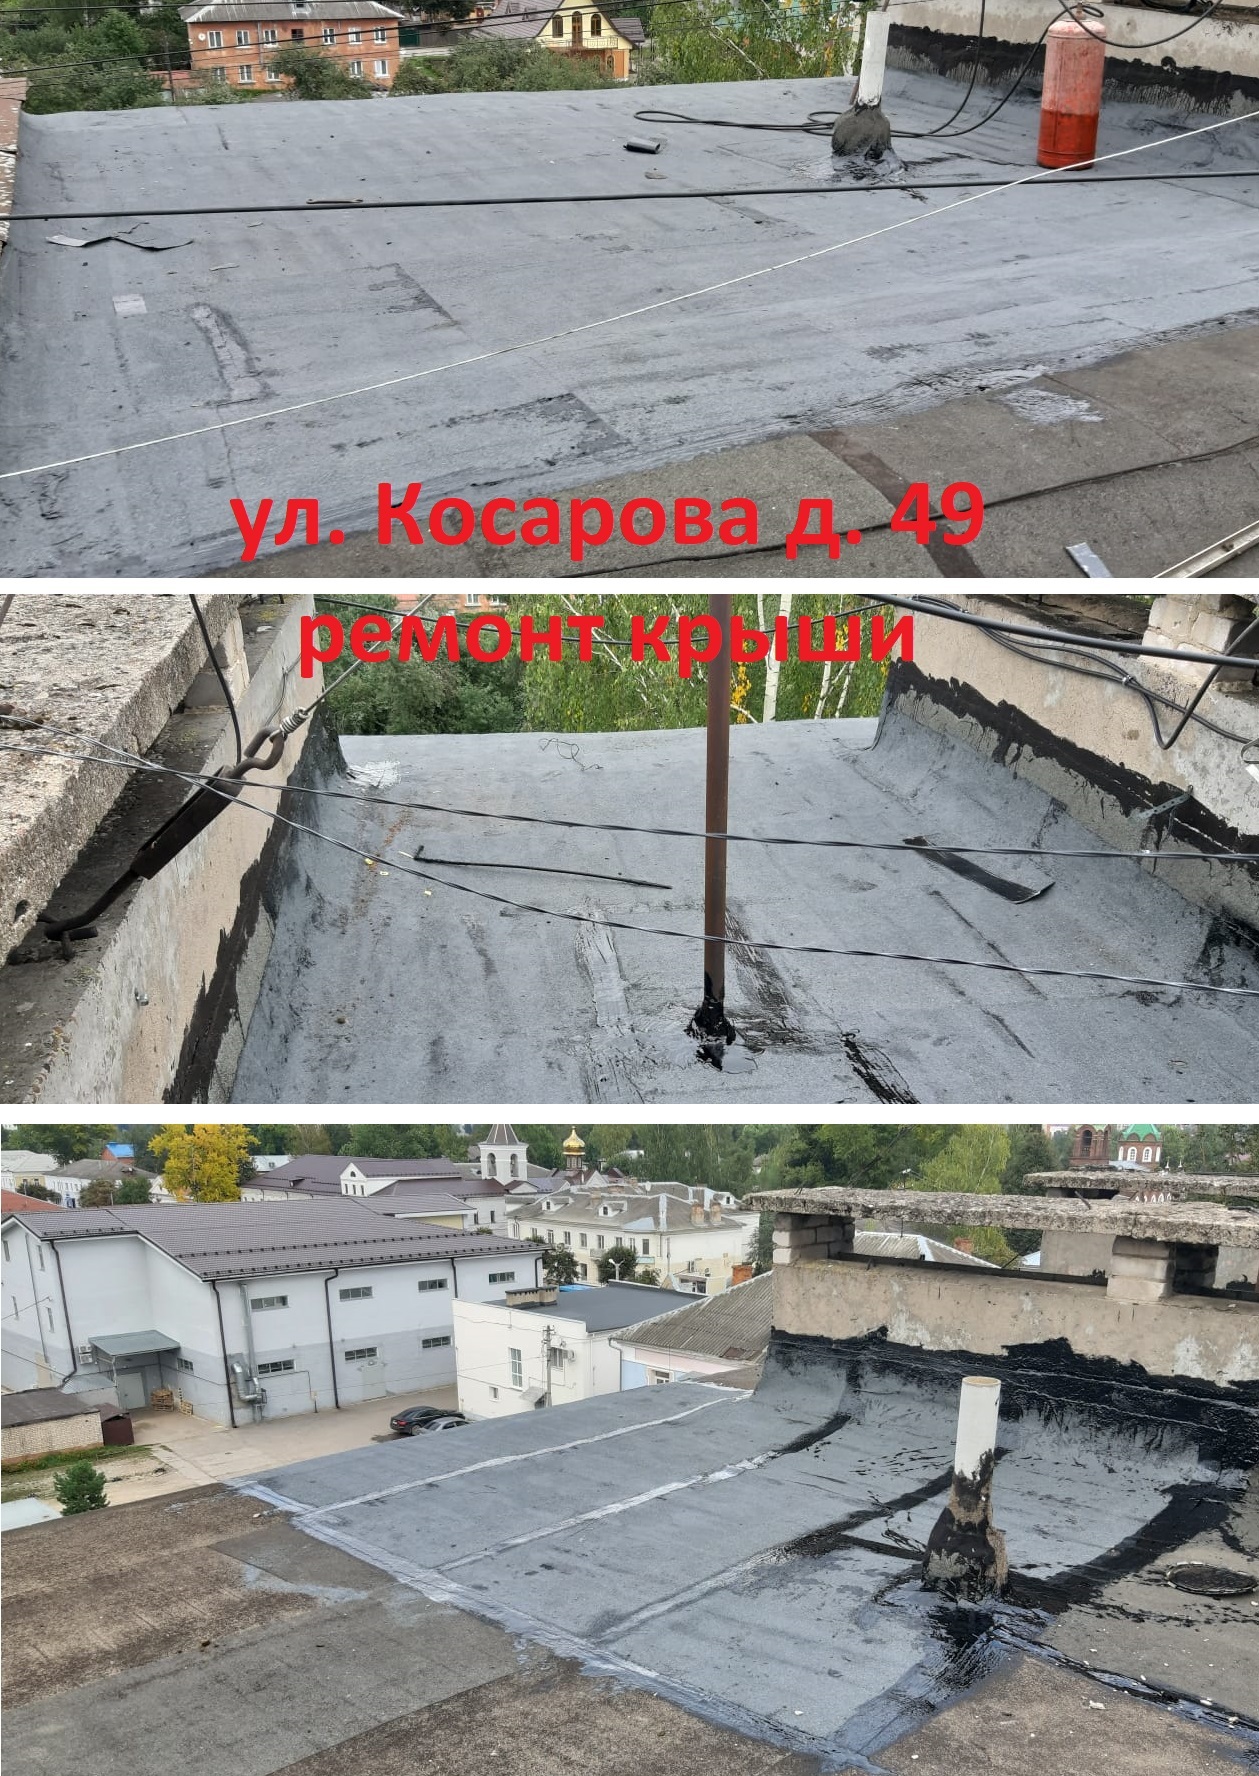 Косарова 49 крыша2.jpg